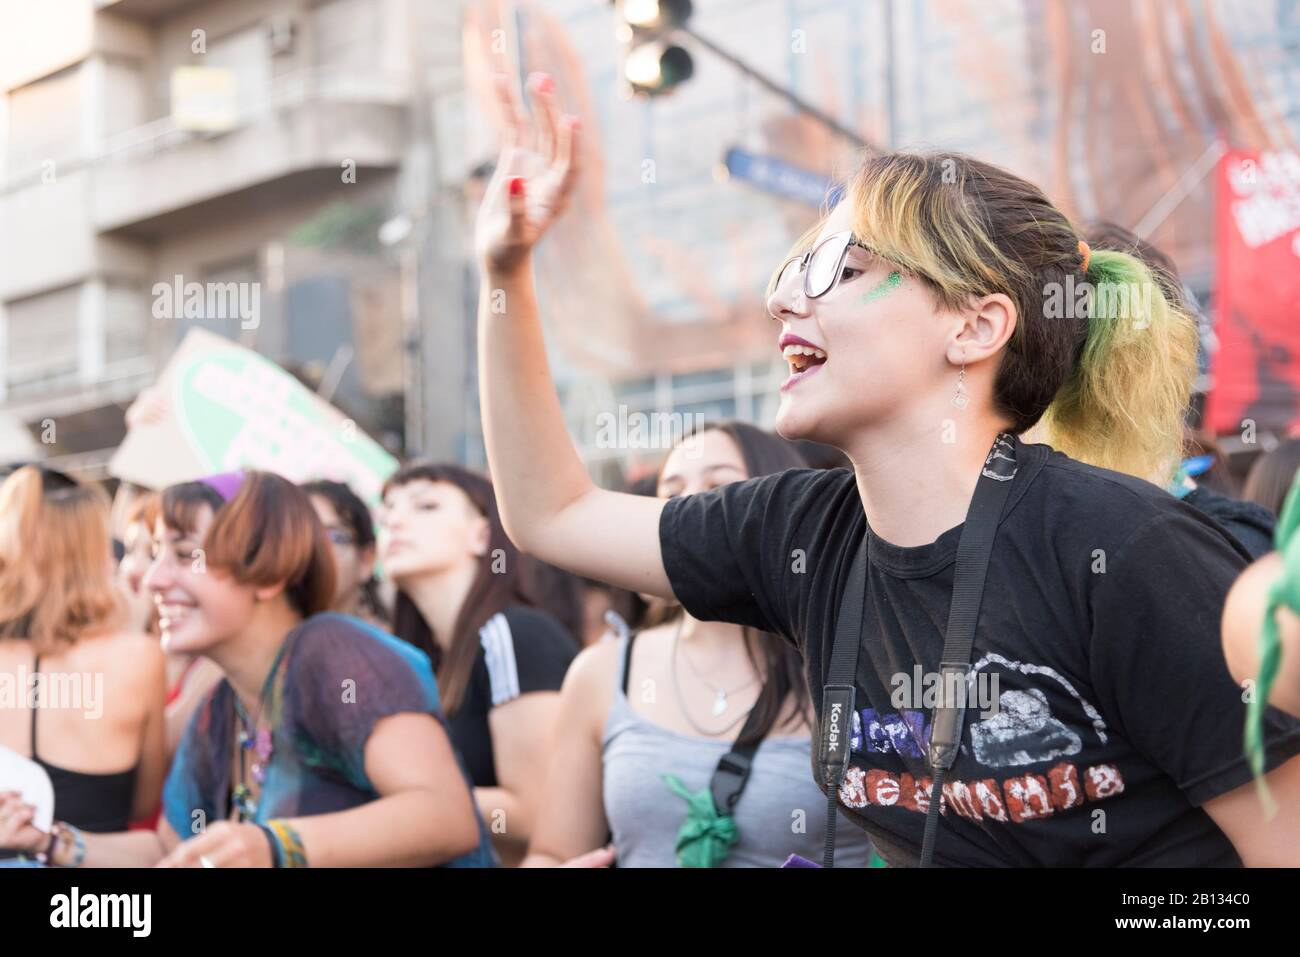 Capital Federal, Buenos Aires/Argentinien; 19. Februar 2020: Junge Frau ruft Slogans bei einer Demonstration für die Verabschiedung des Gesetzes der Justiz, Stockfoto